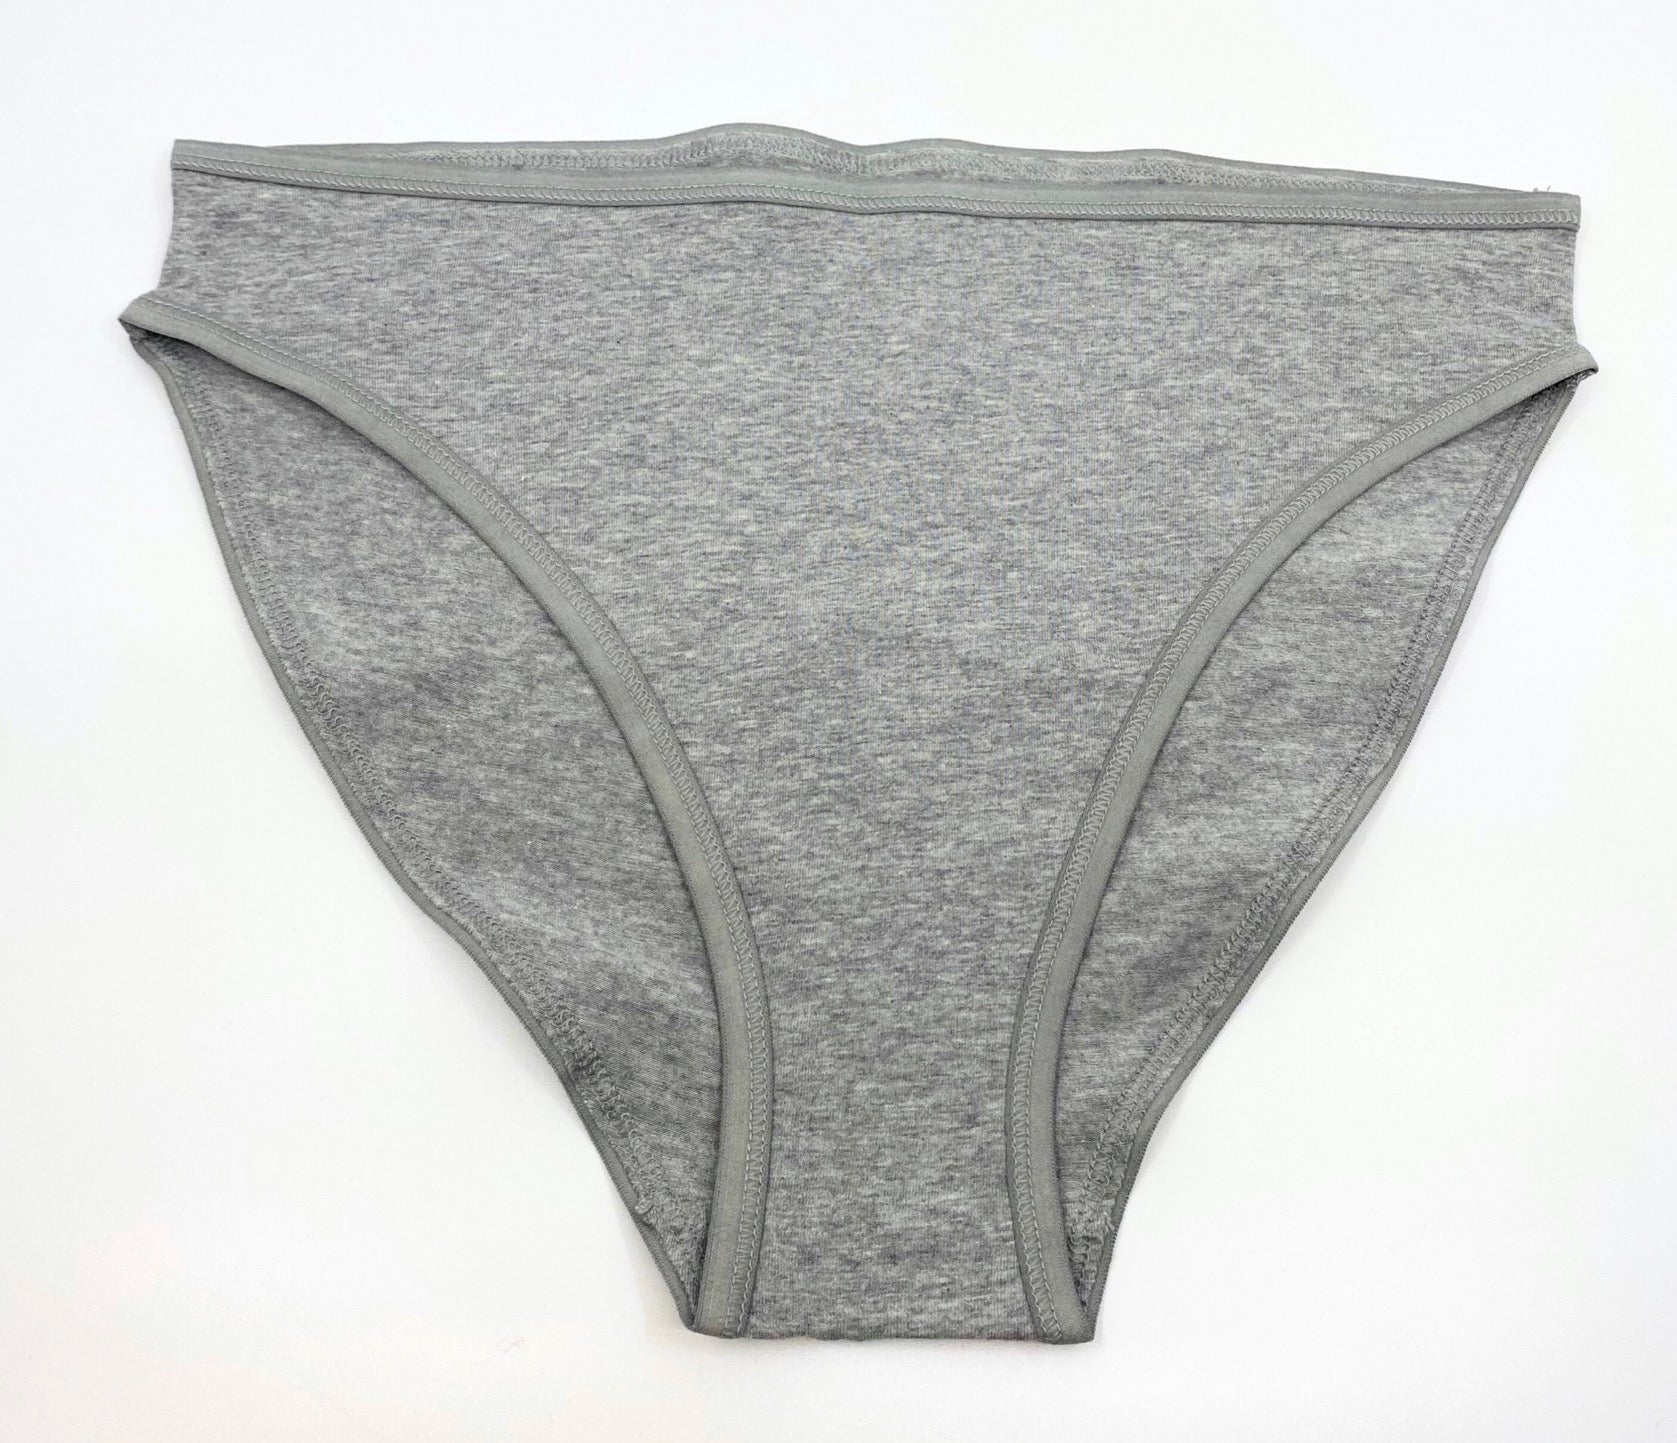 Women's organic cotton matching bralette and mid-rise bikini set - Light Grey